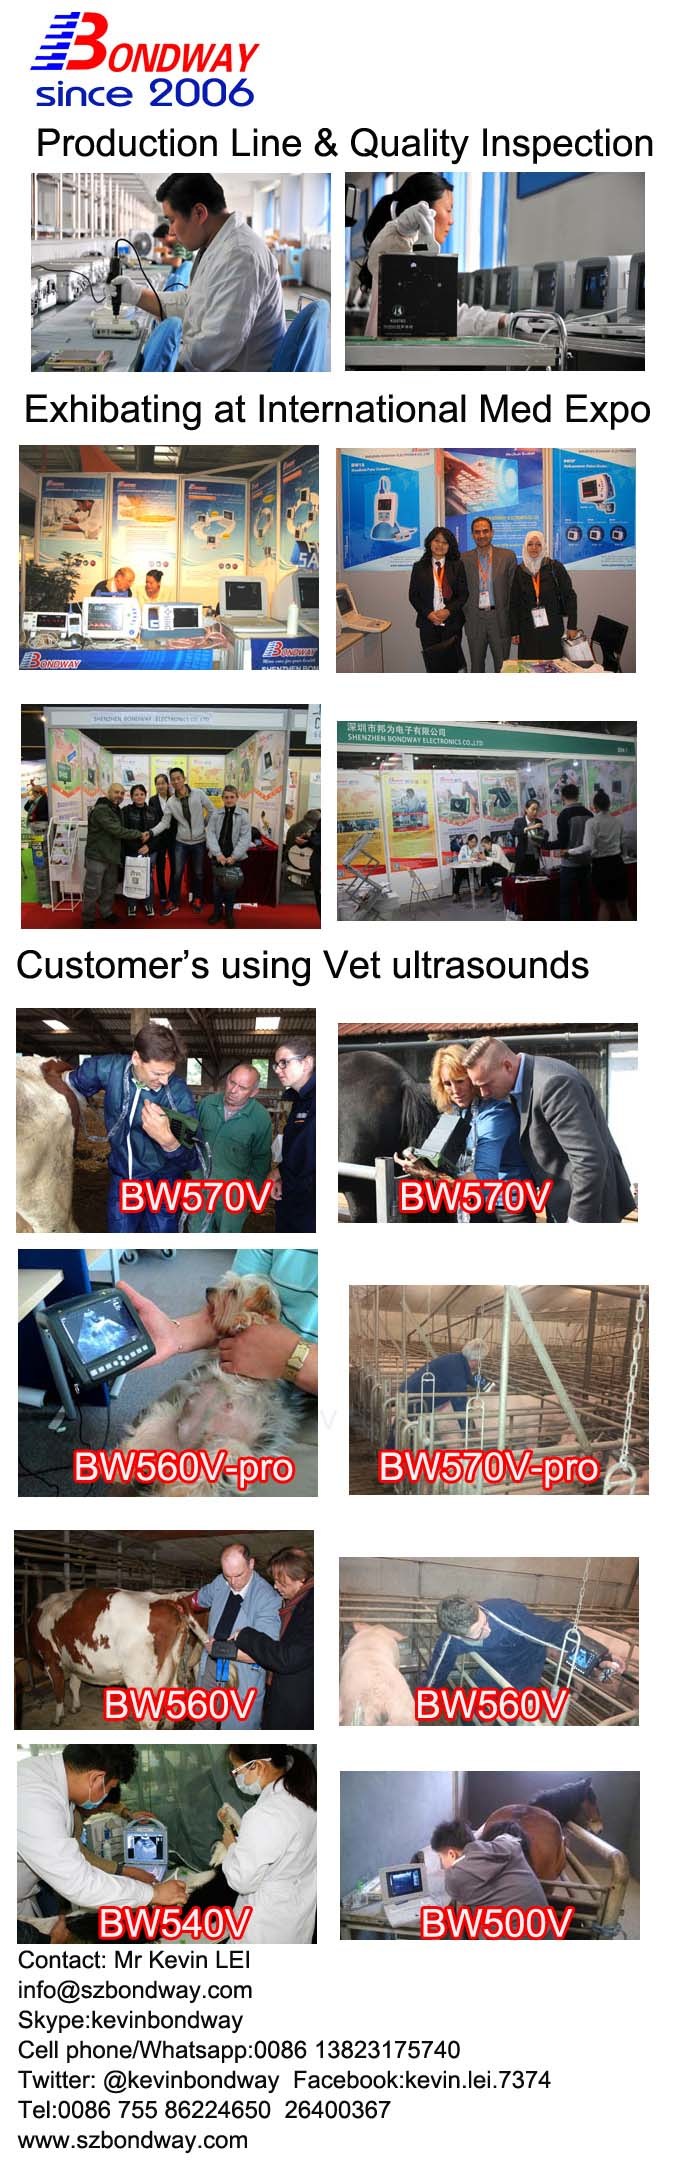 Diagnostic Ultrasound Portable 4D Doppler Scanner, Veterinary Ultrasound for Livestock Reproduction Imaging, Breeding Farmers, Vet Ultrasonic Scanner